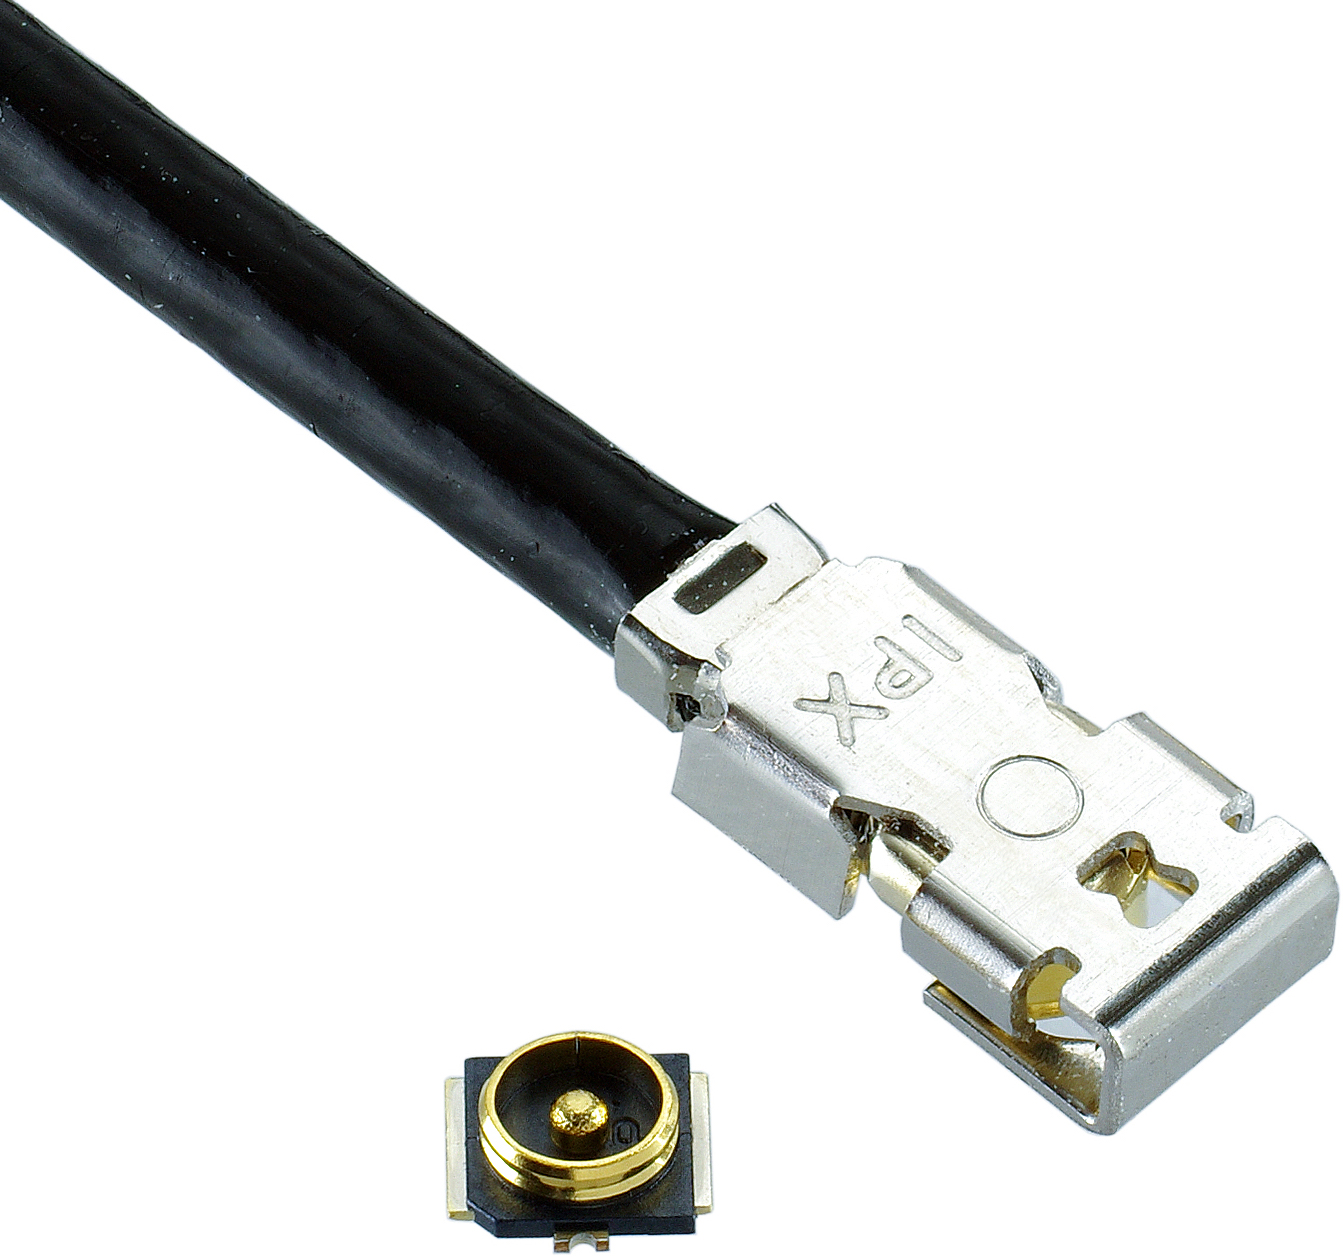 Consumer Electronics Connector Products: I-PEX Connectors’ MHF 4L LK Series Connectors